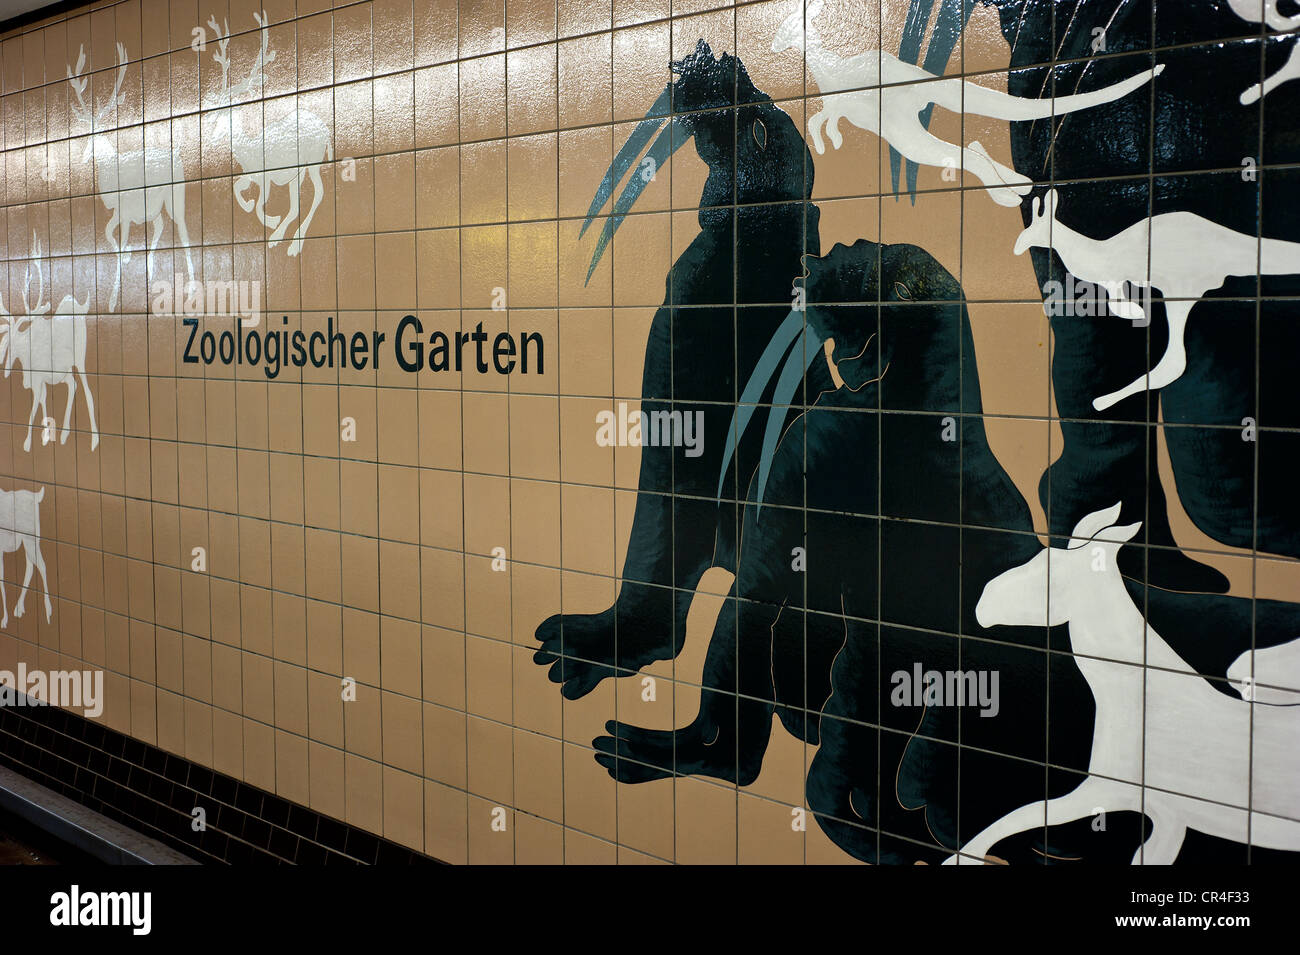 Zoologischer Garten, metro station, Berlin Europe Stock Photo